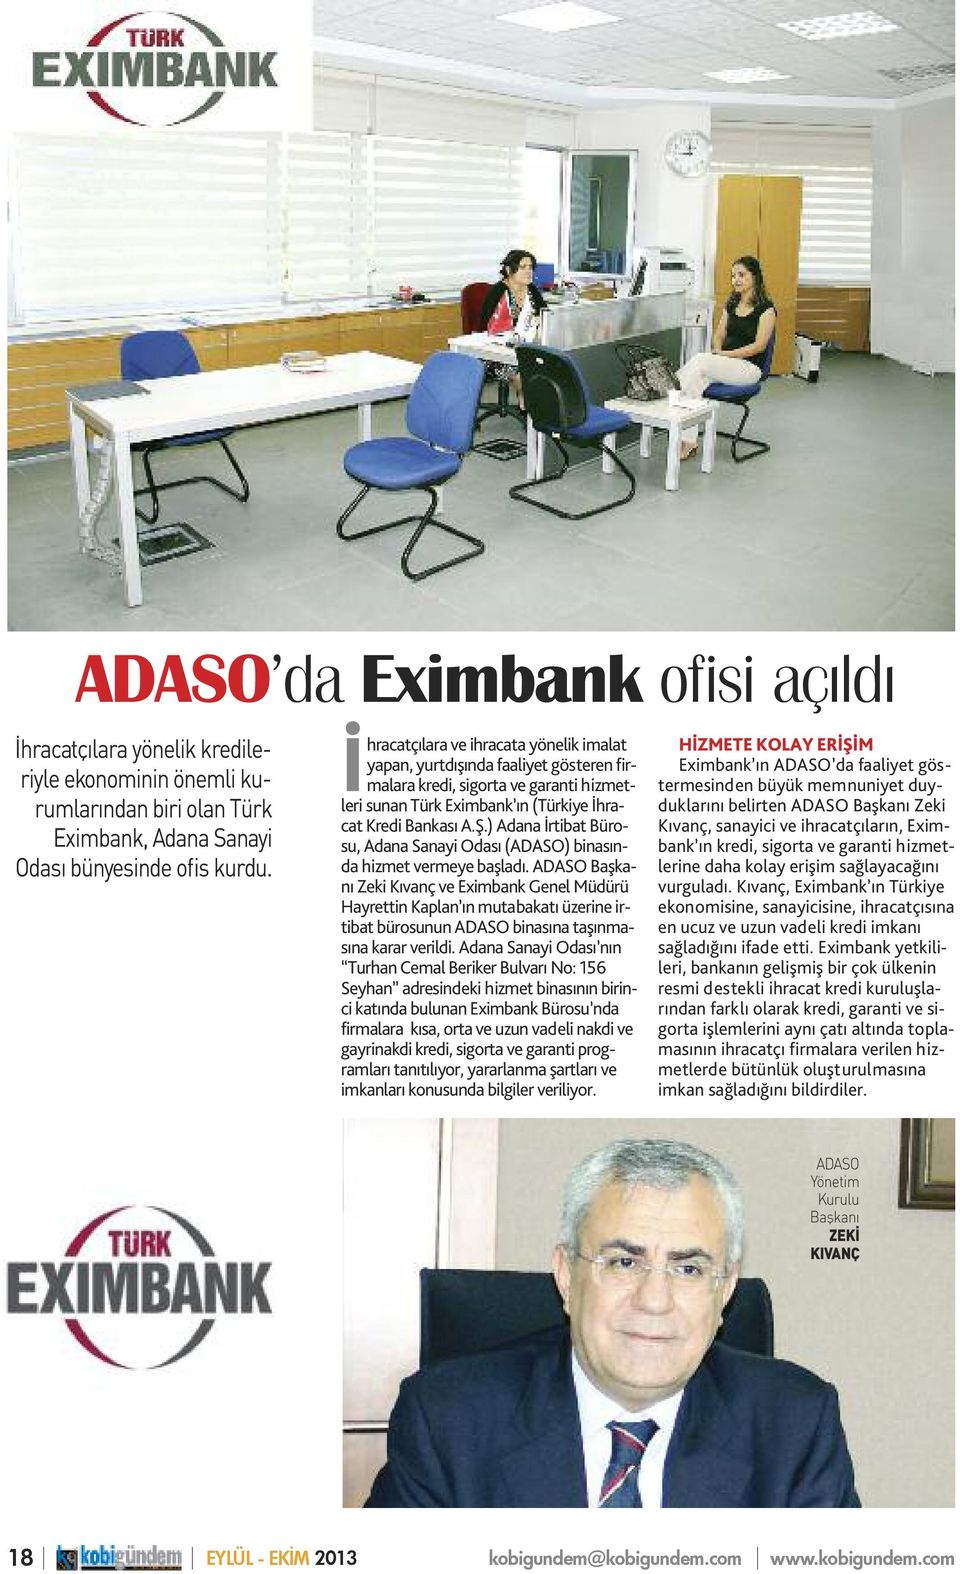 ) Adana İrtibat Bürosu, Adana Sanayi Odası (ADASO) binasında hizmet vermeye başladı.